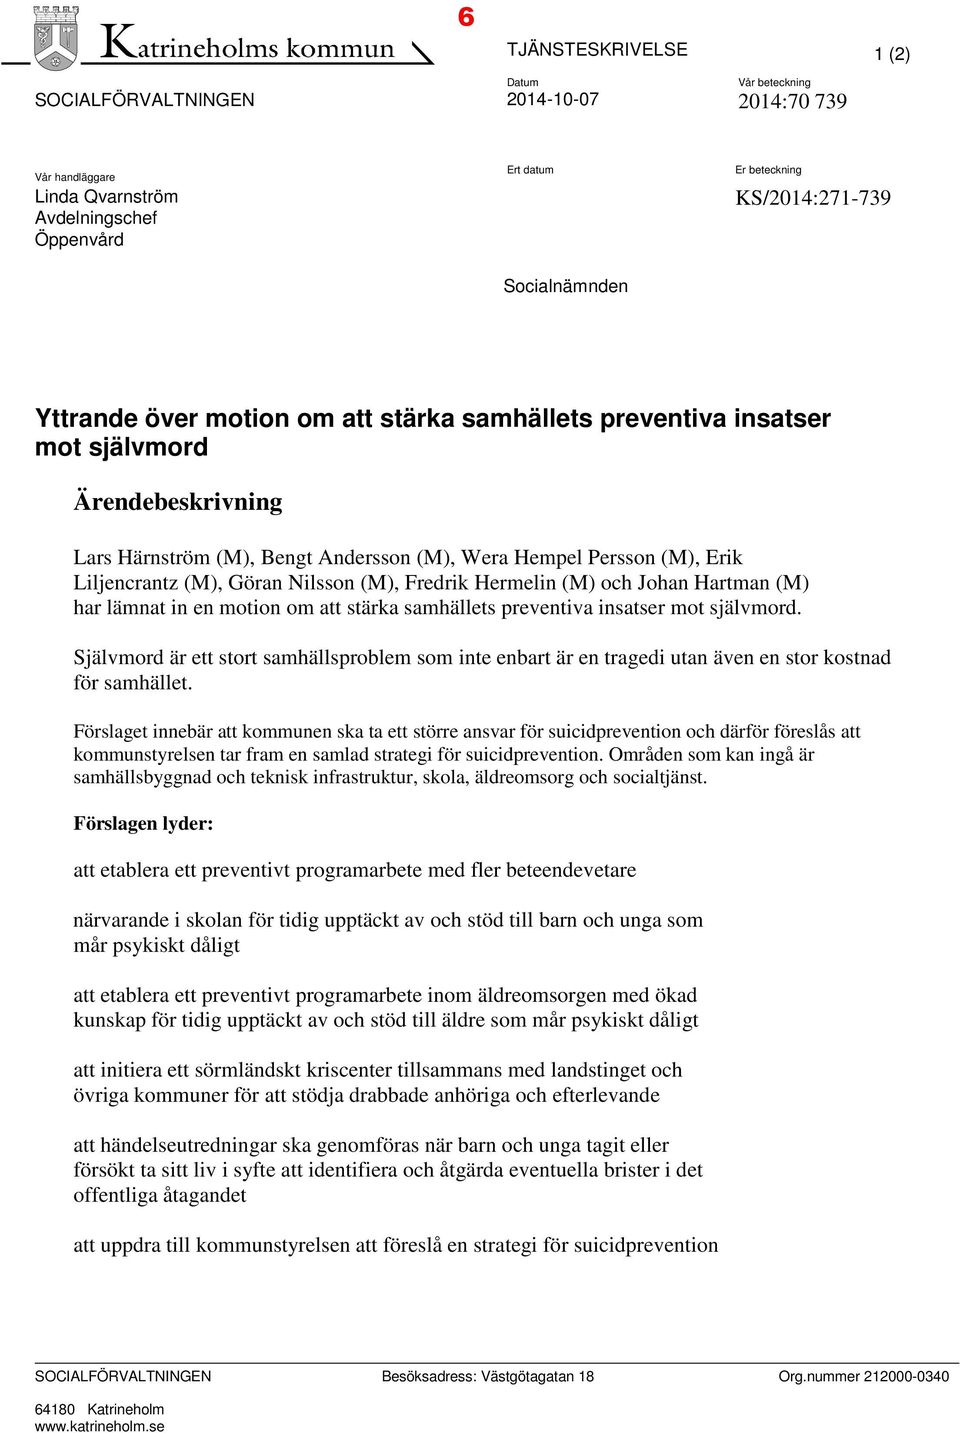 (M), Göran Nilsson (M), Fredrik Hermelin (M) och Johan Hartman (M) har lämnat in en motion om att stärka samhällets preventiva insatser mot självmord.